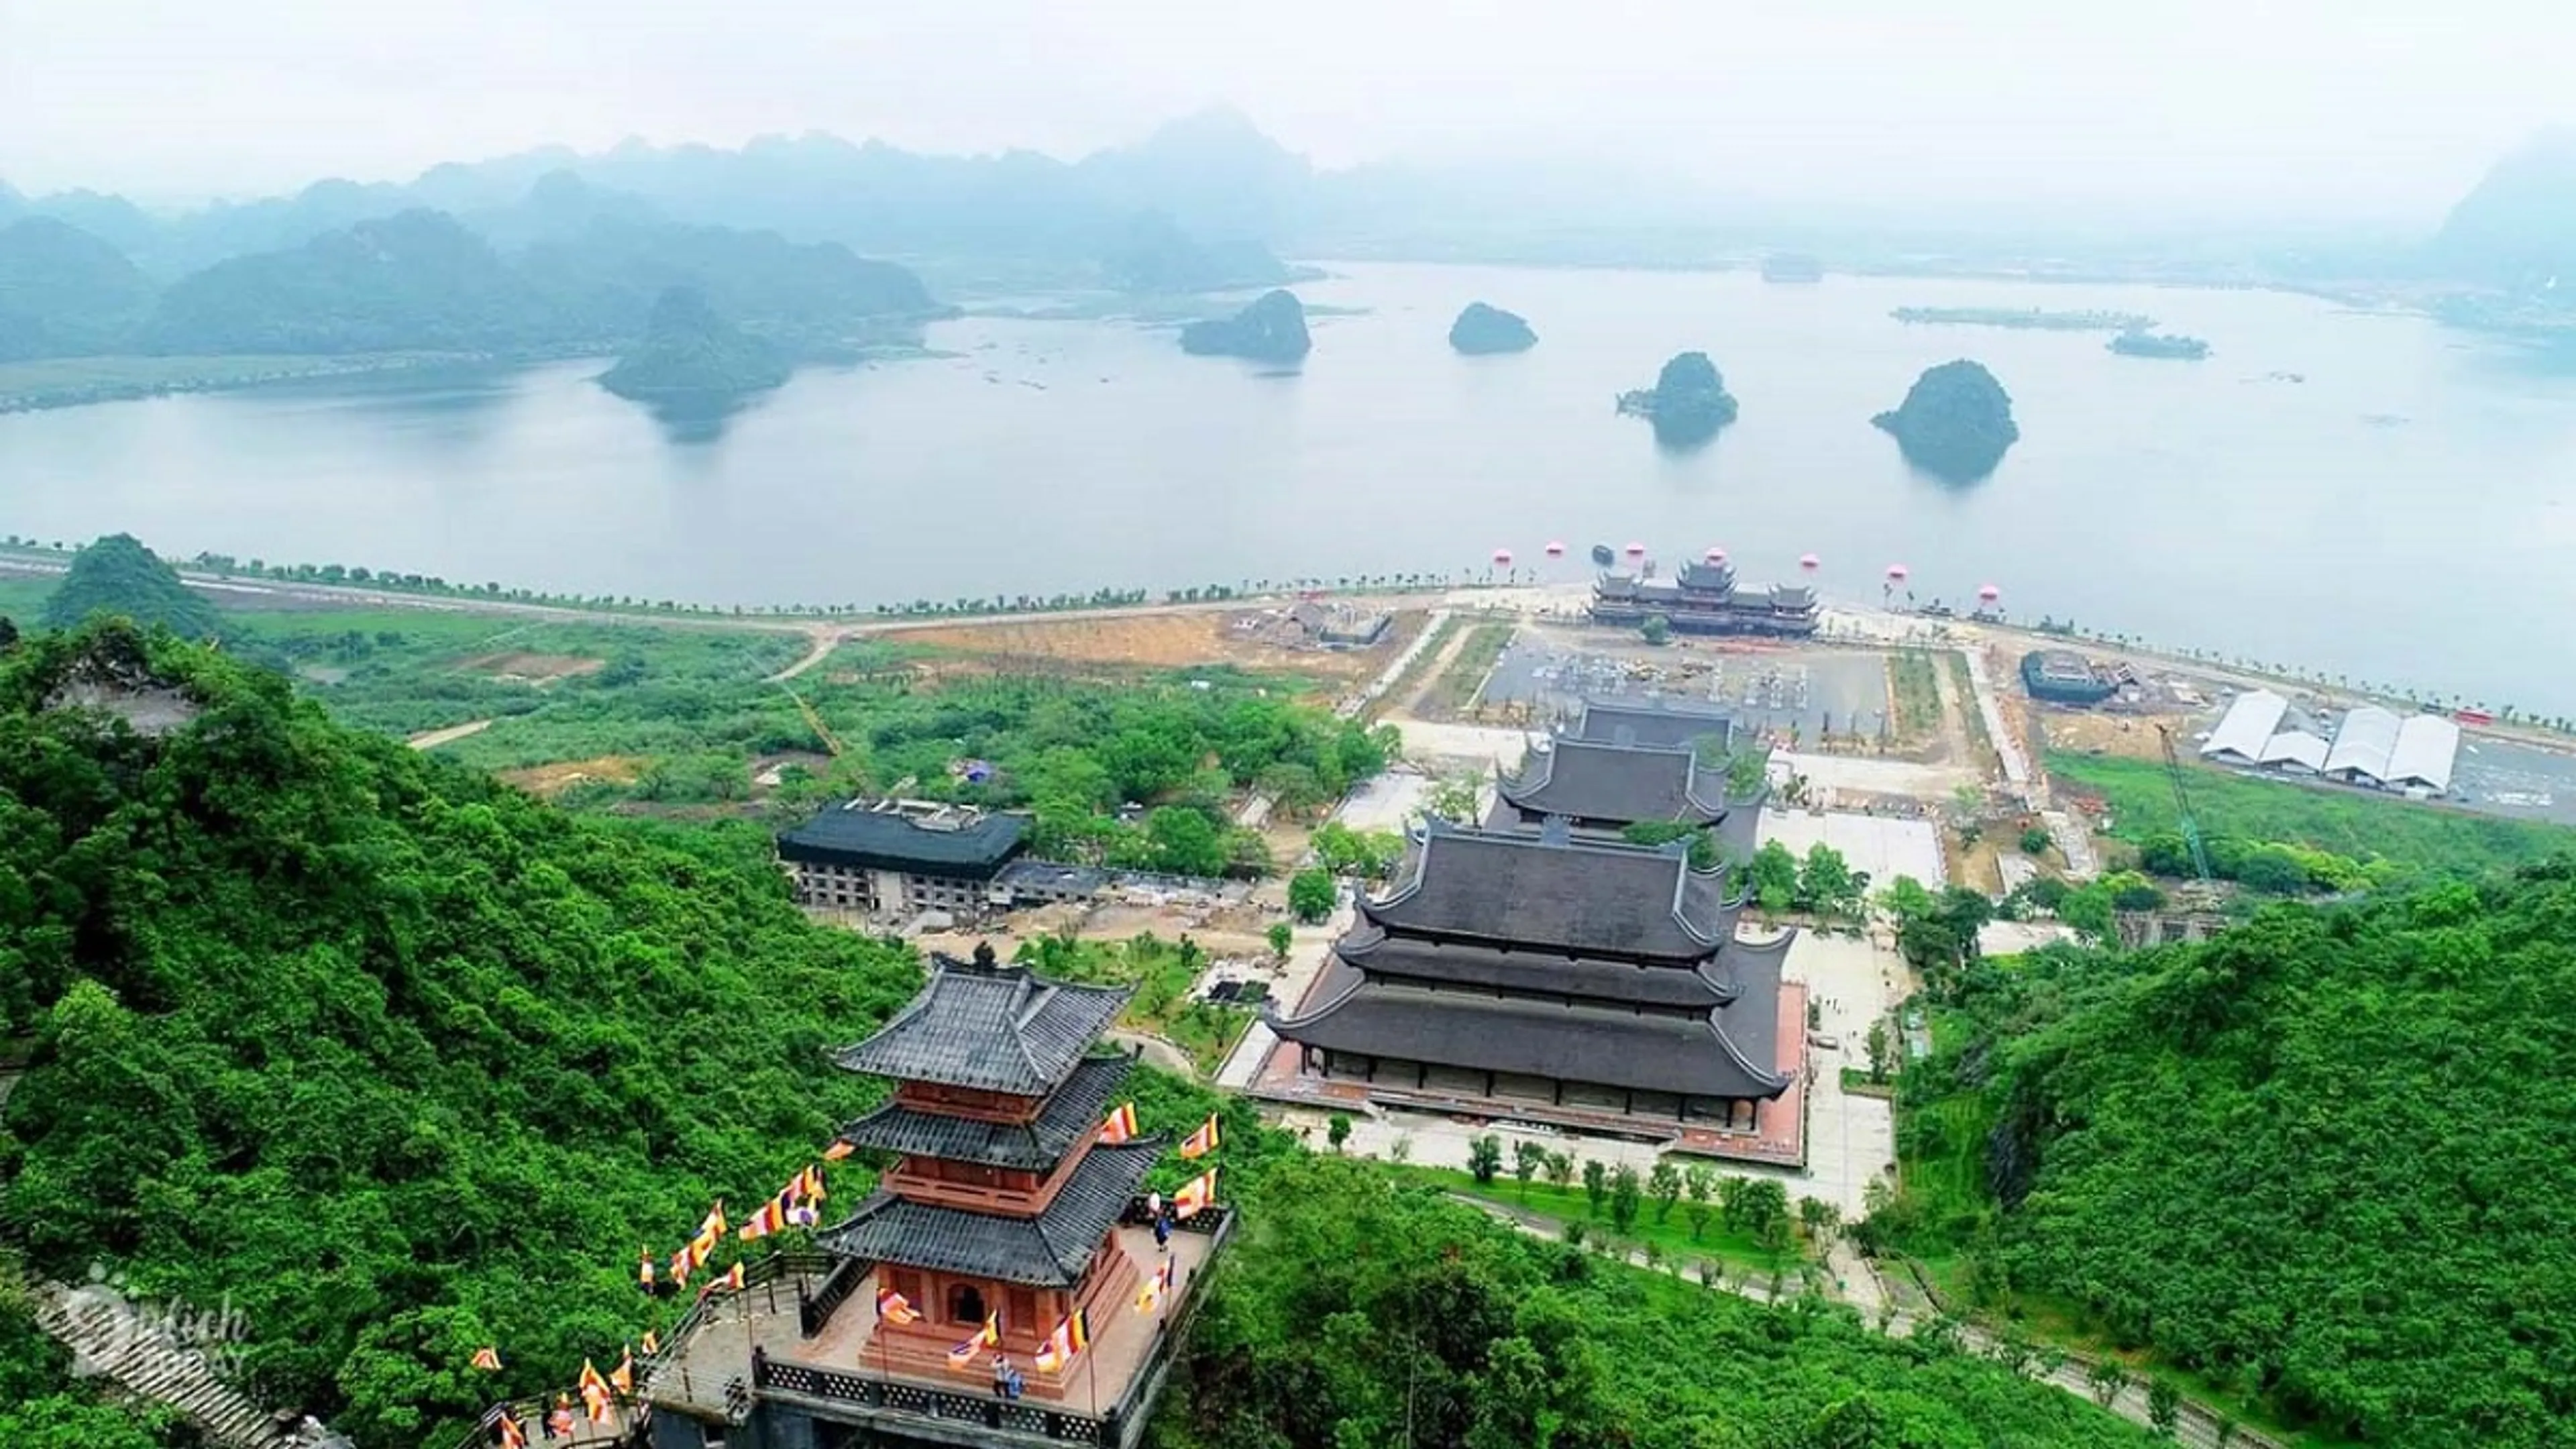 Tham quan chùa Tam Chúc Hà Nam ngôi chùa lớn nhất thế giới